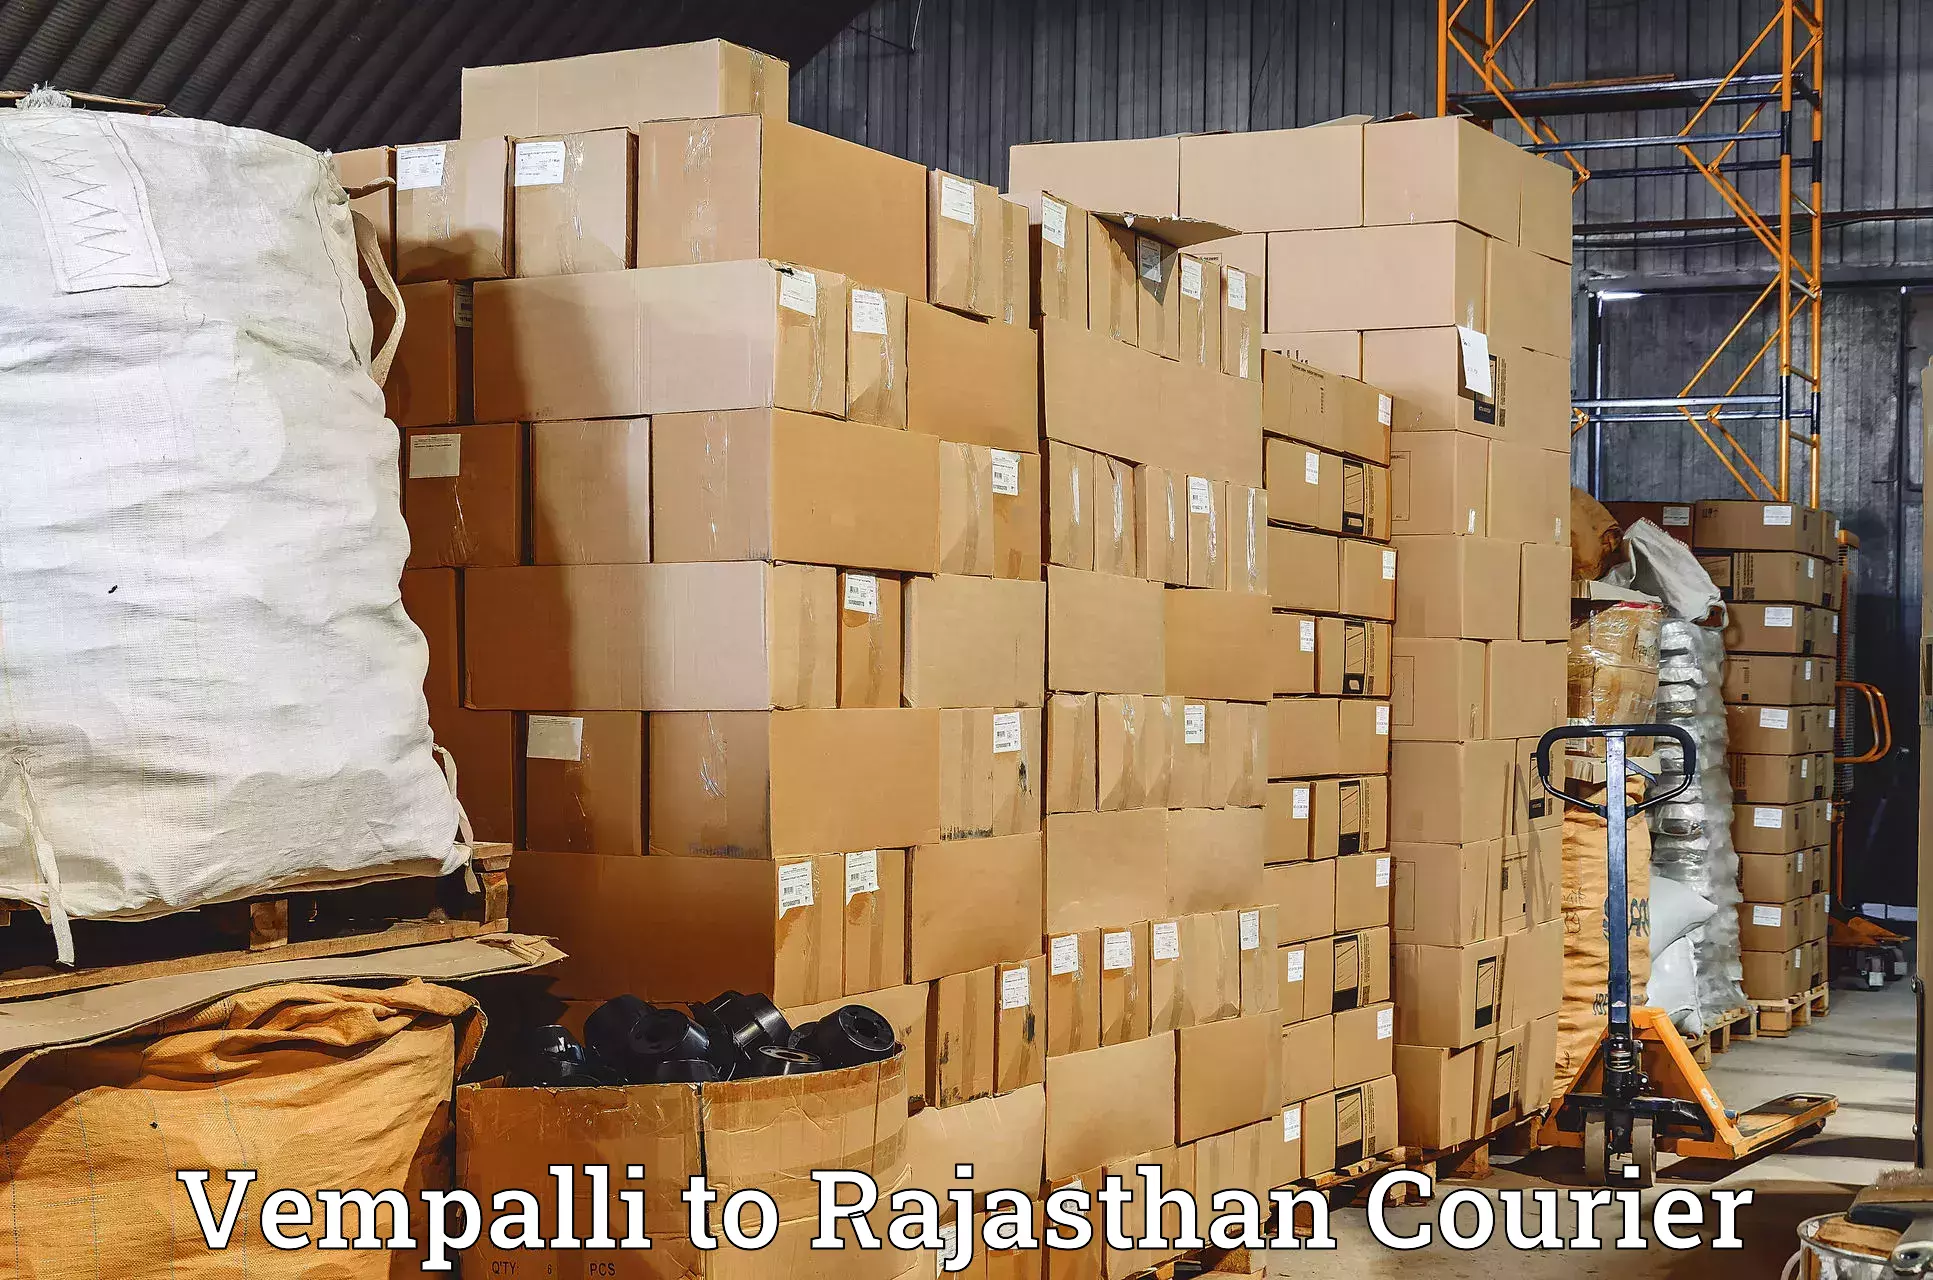 Courier service comparison Vempalli to Udaipur